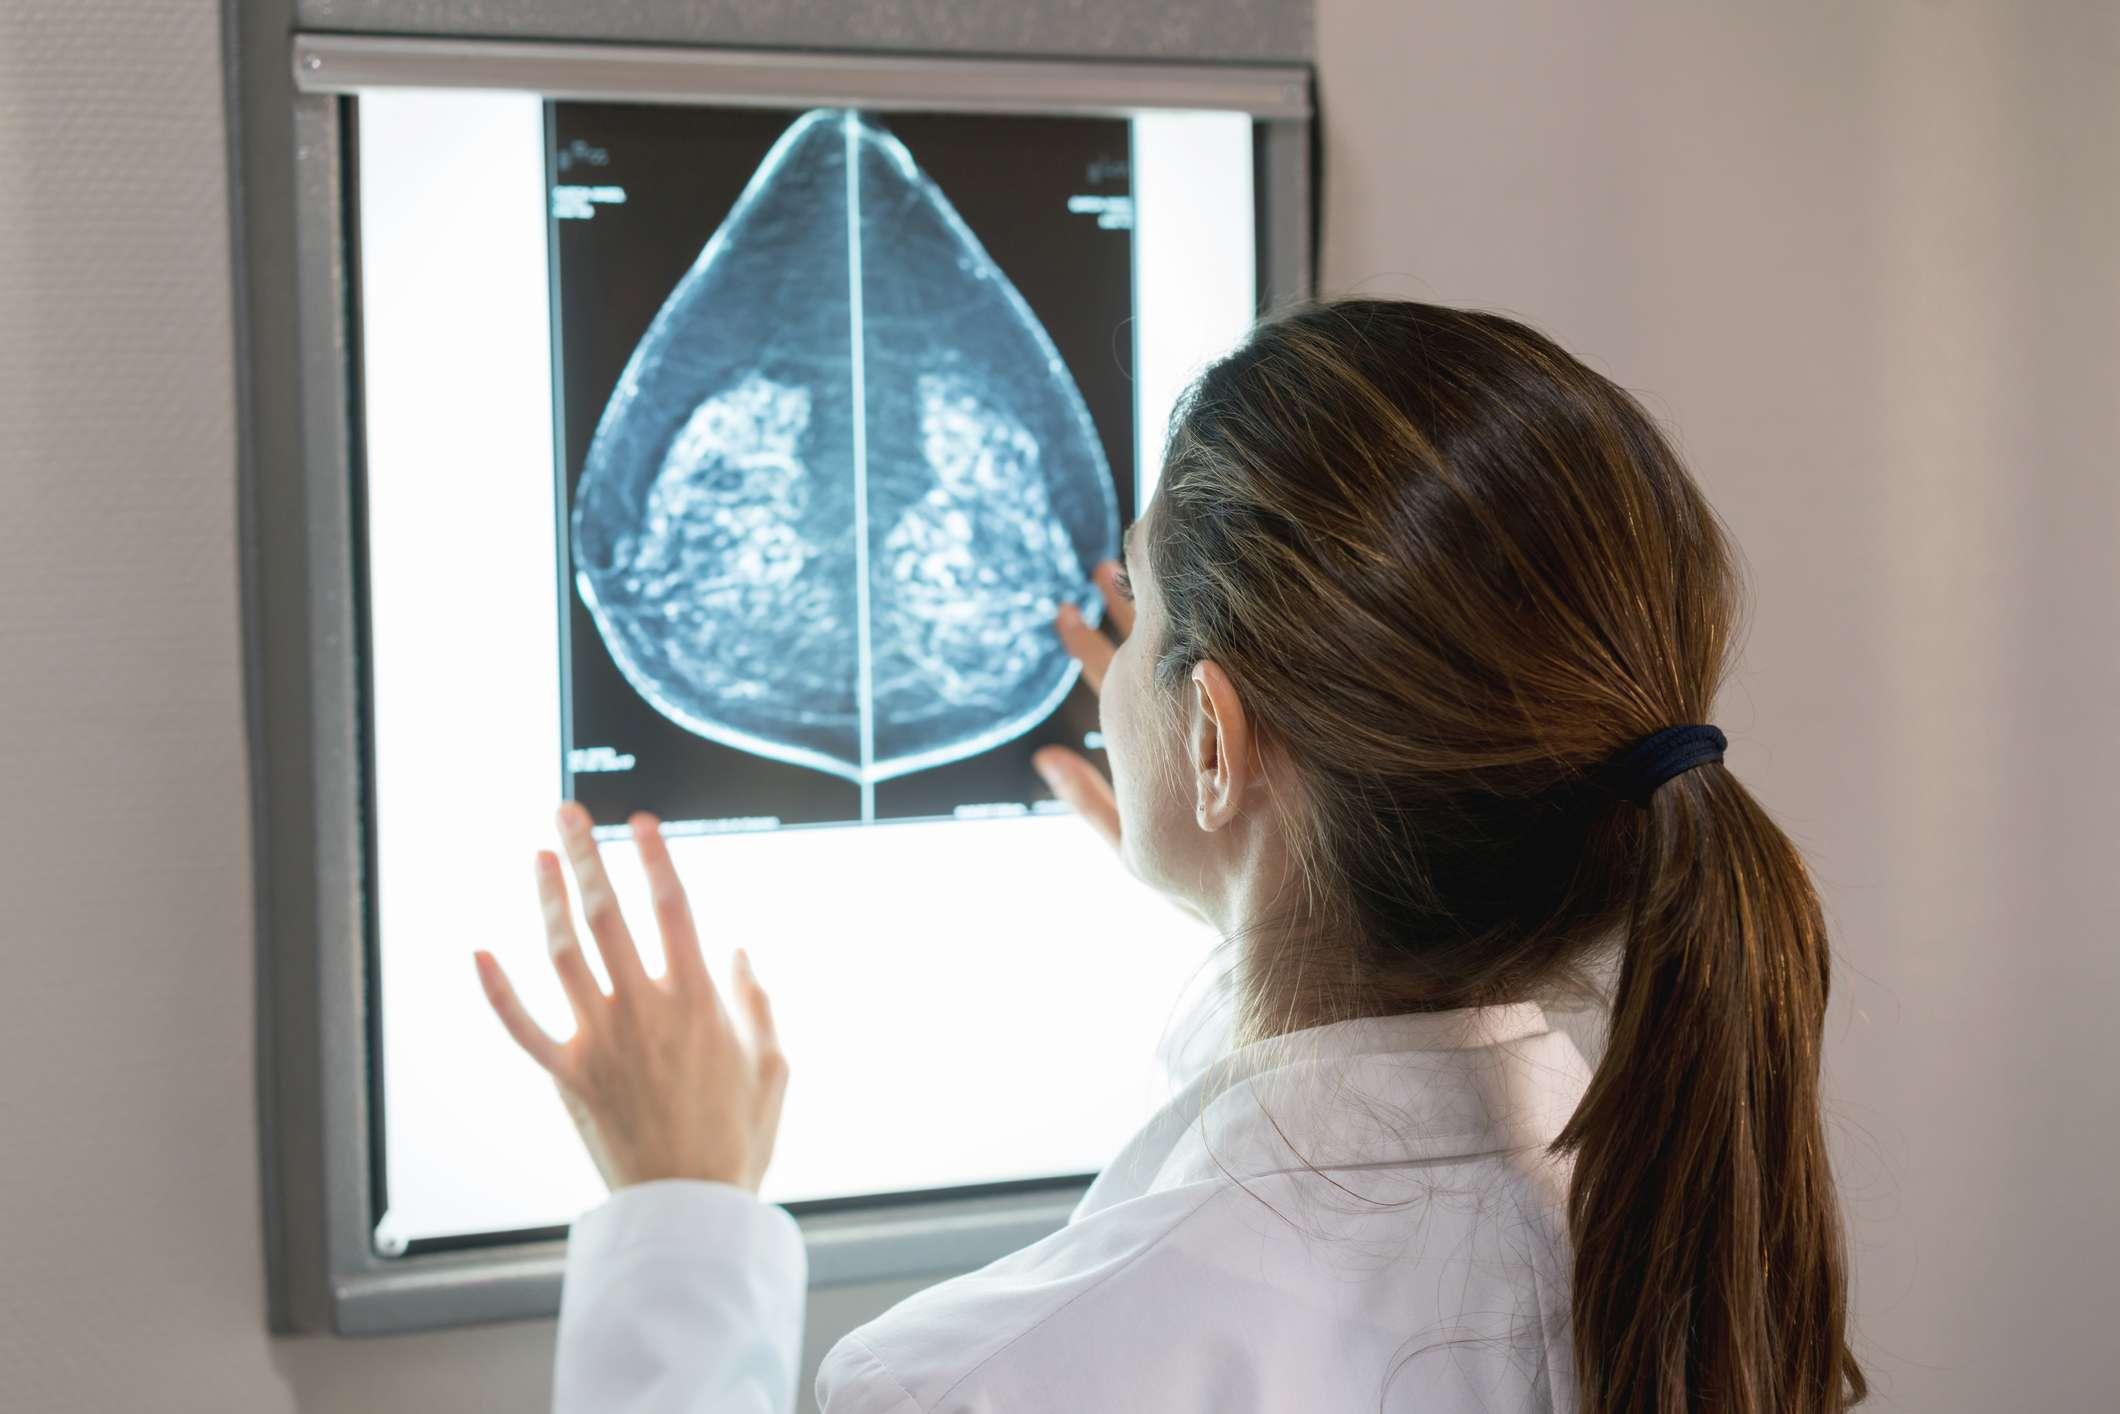 Nicht erkennbare Gynäkologin, die im Krankenhaus eine Mammographie eines Patienten betrachtet